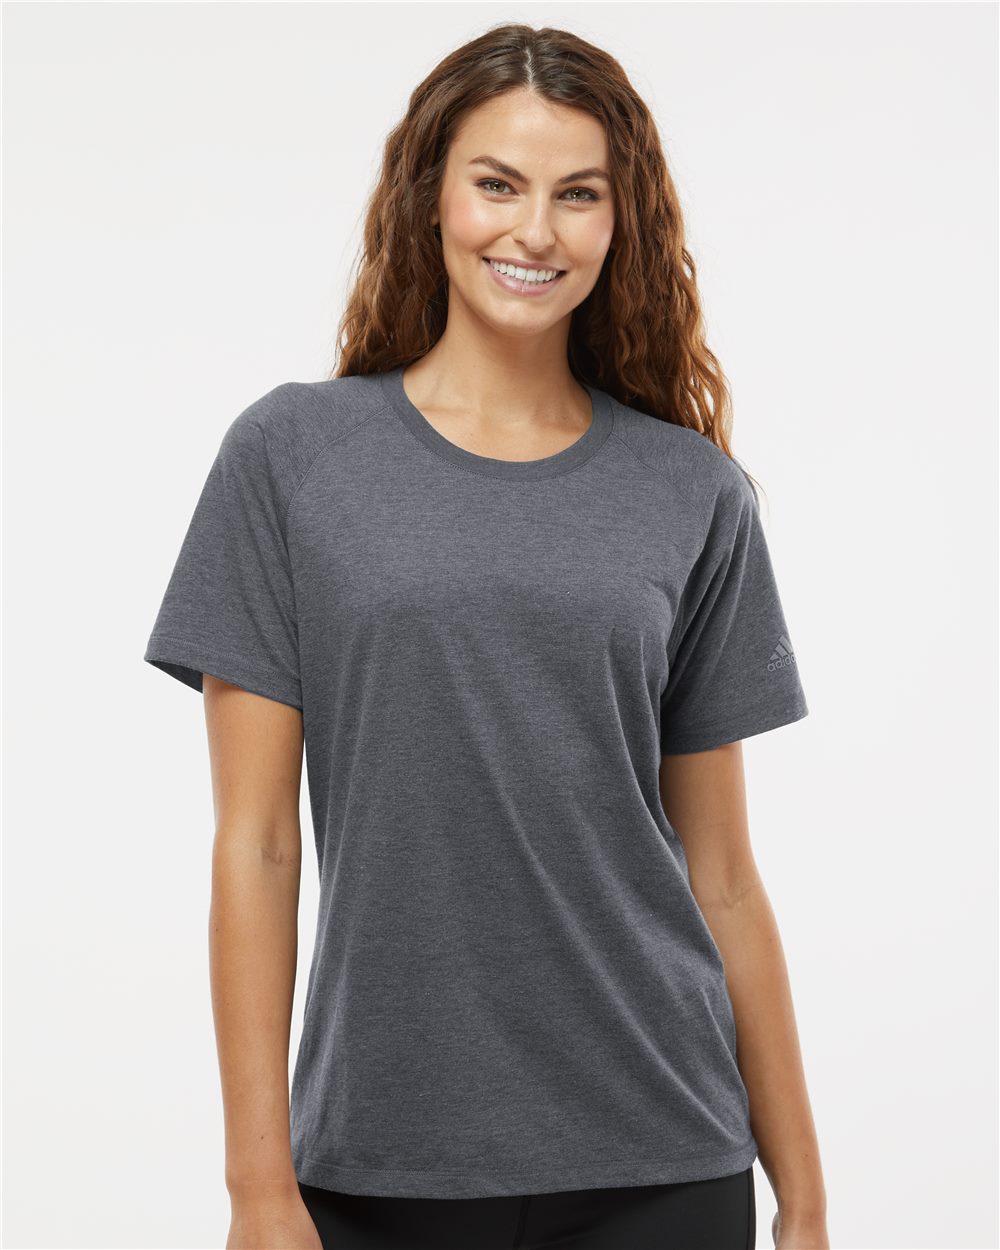 Adidas A557 Women's Blended T-Shirt Adidas A557 Women&#39;s Blended T-Shirt